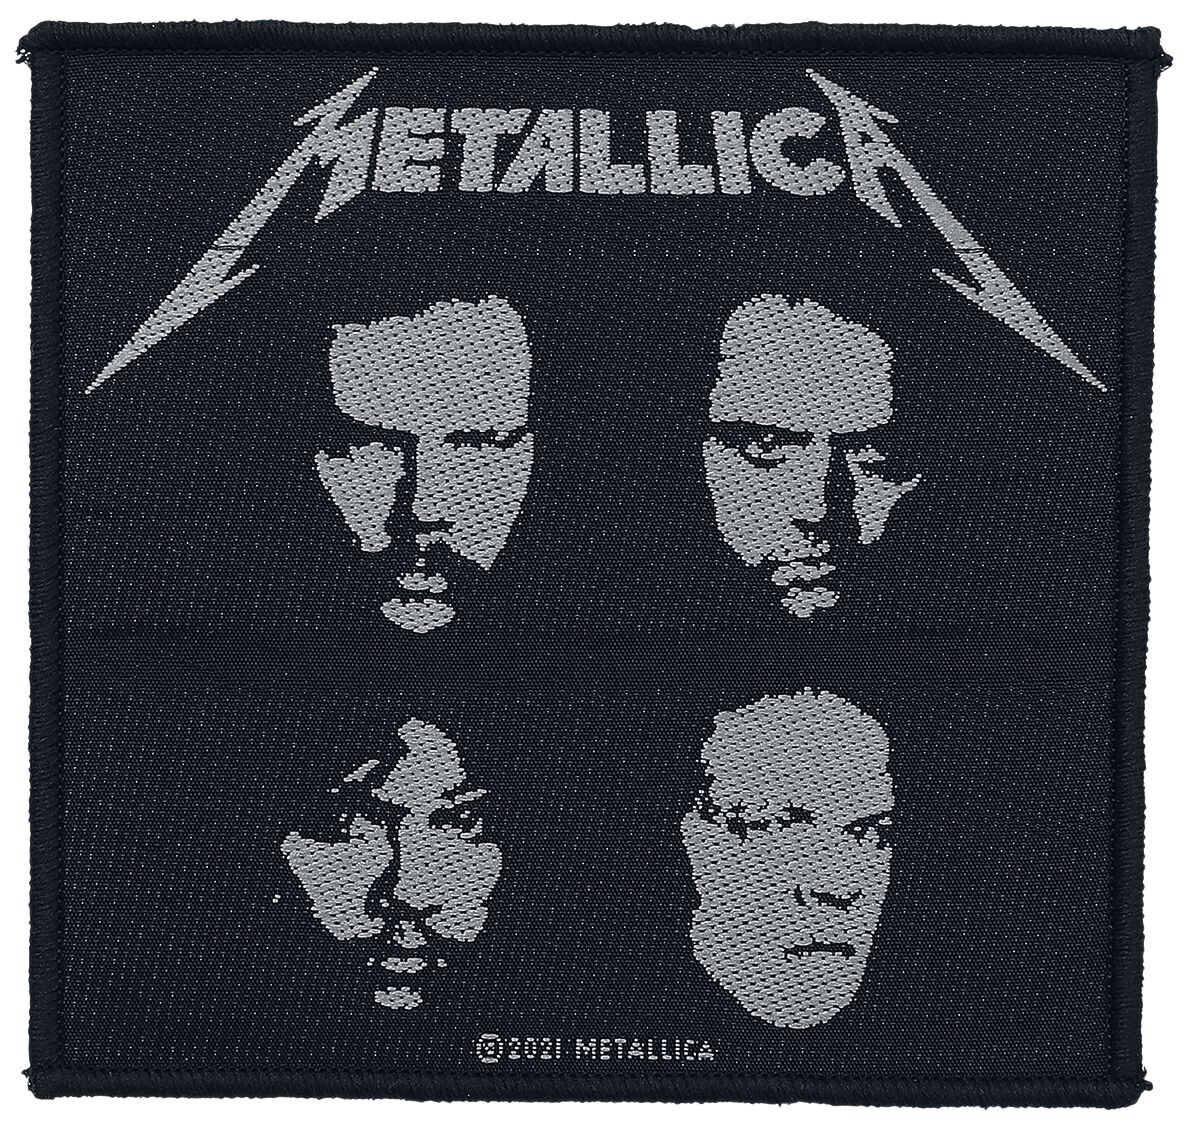 Metallica Patch - Black album - schwarz/weiß  - Lizenziertes Merchandise! von metallica